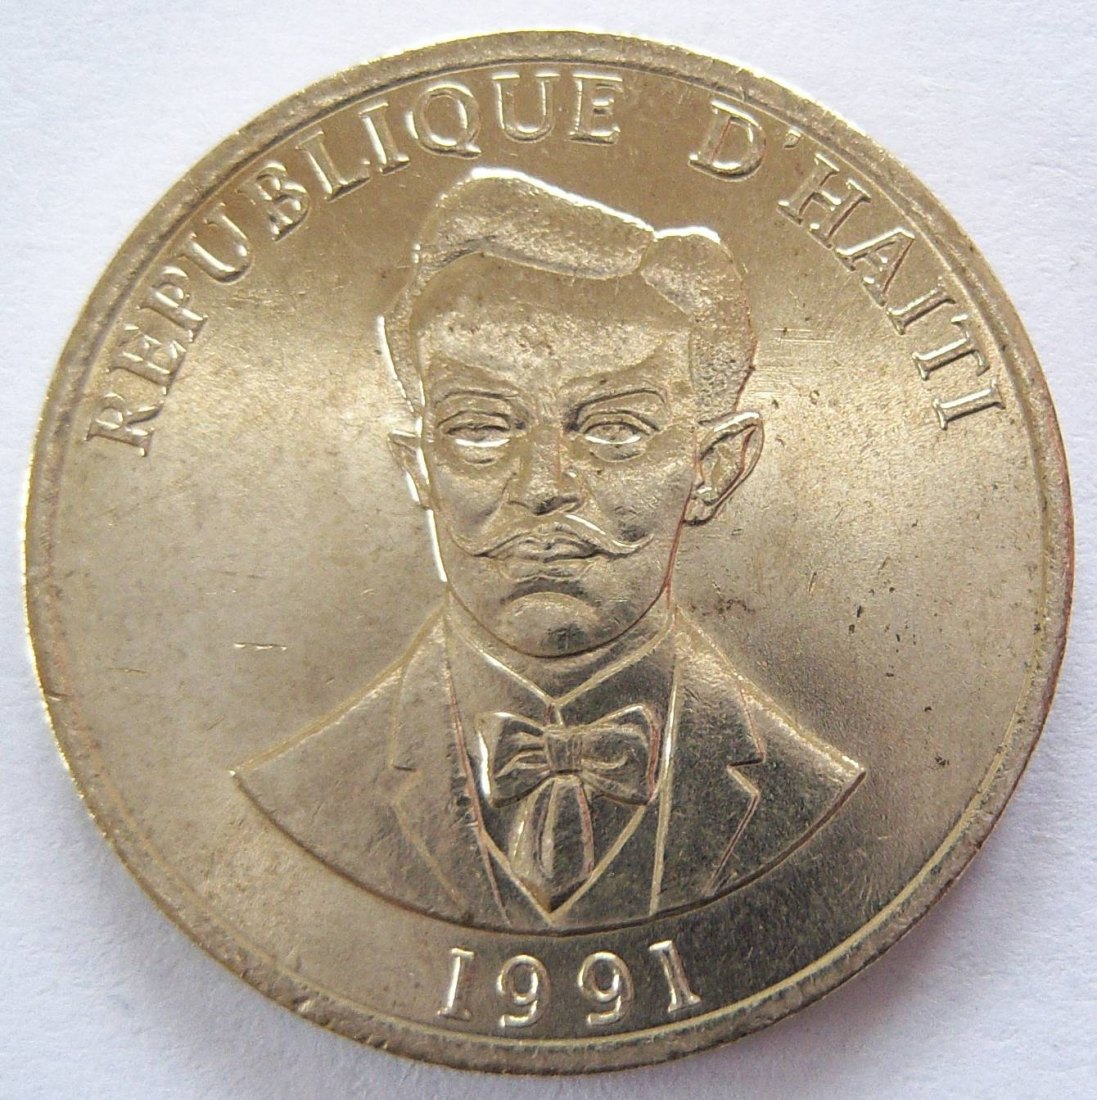  Haiti 20 Centimes 1991   